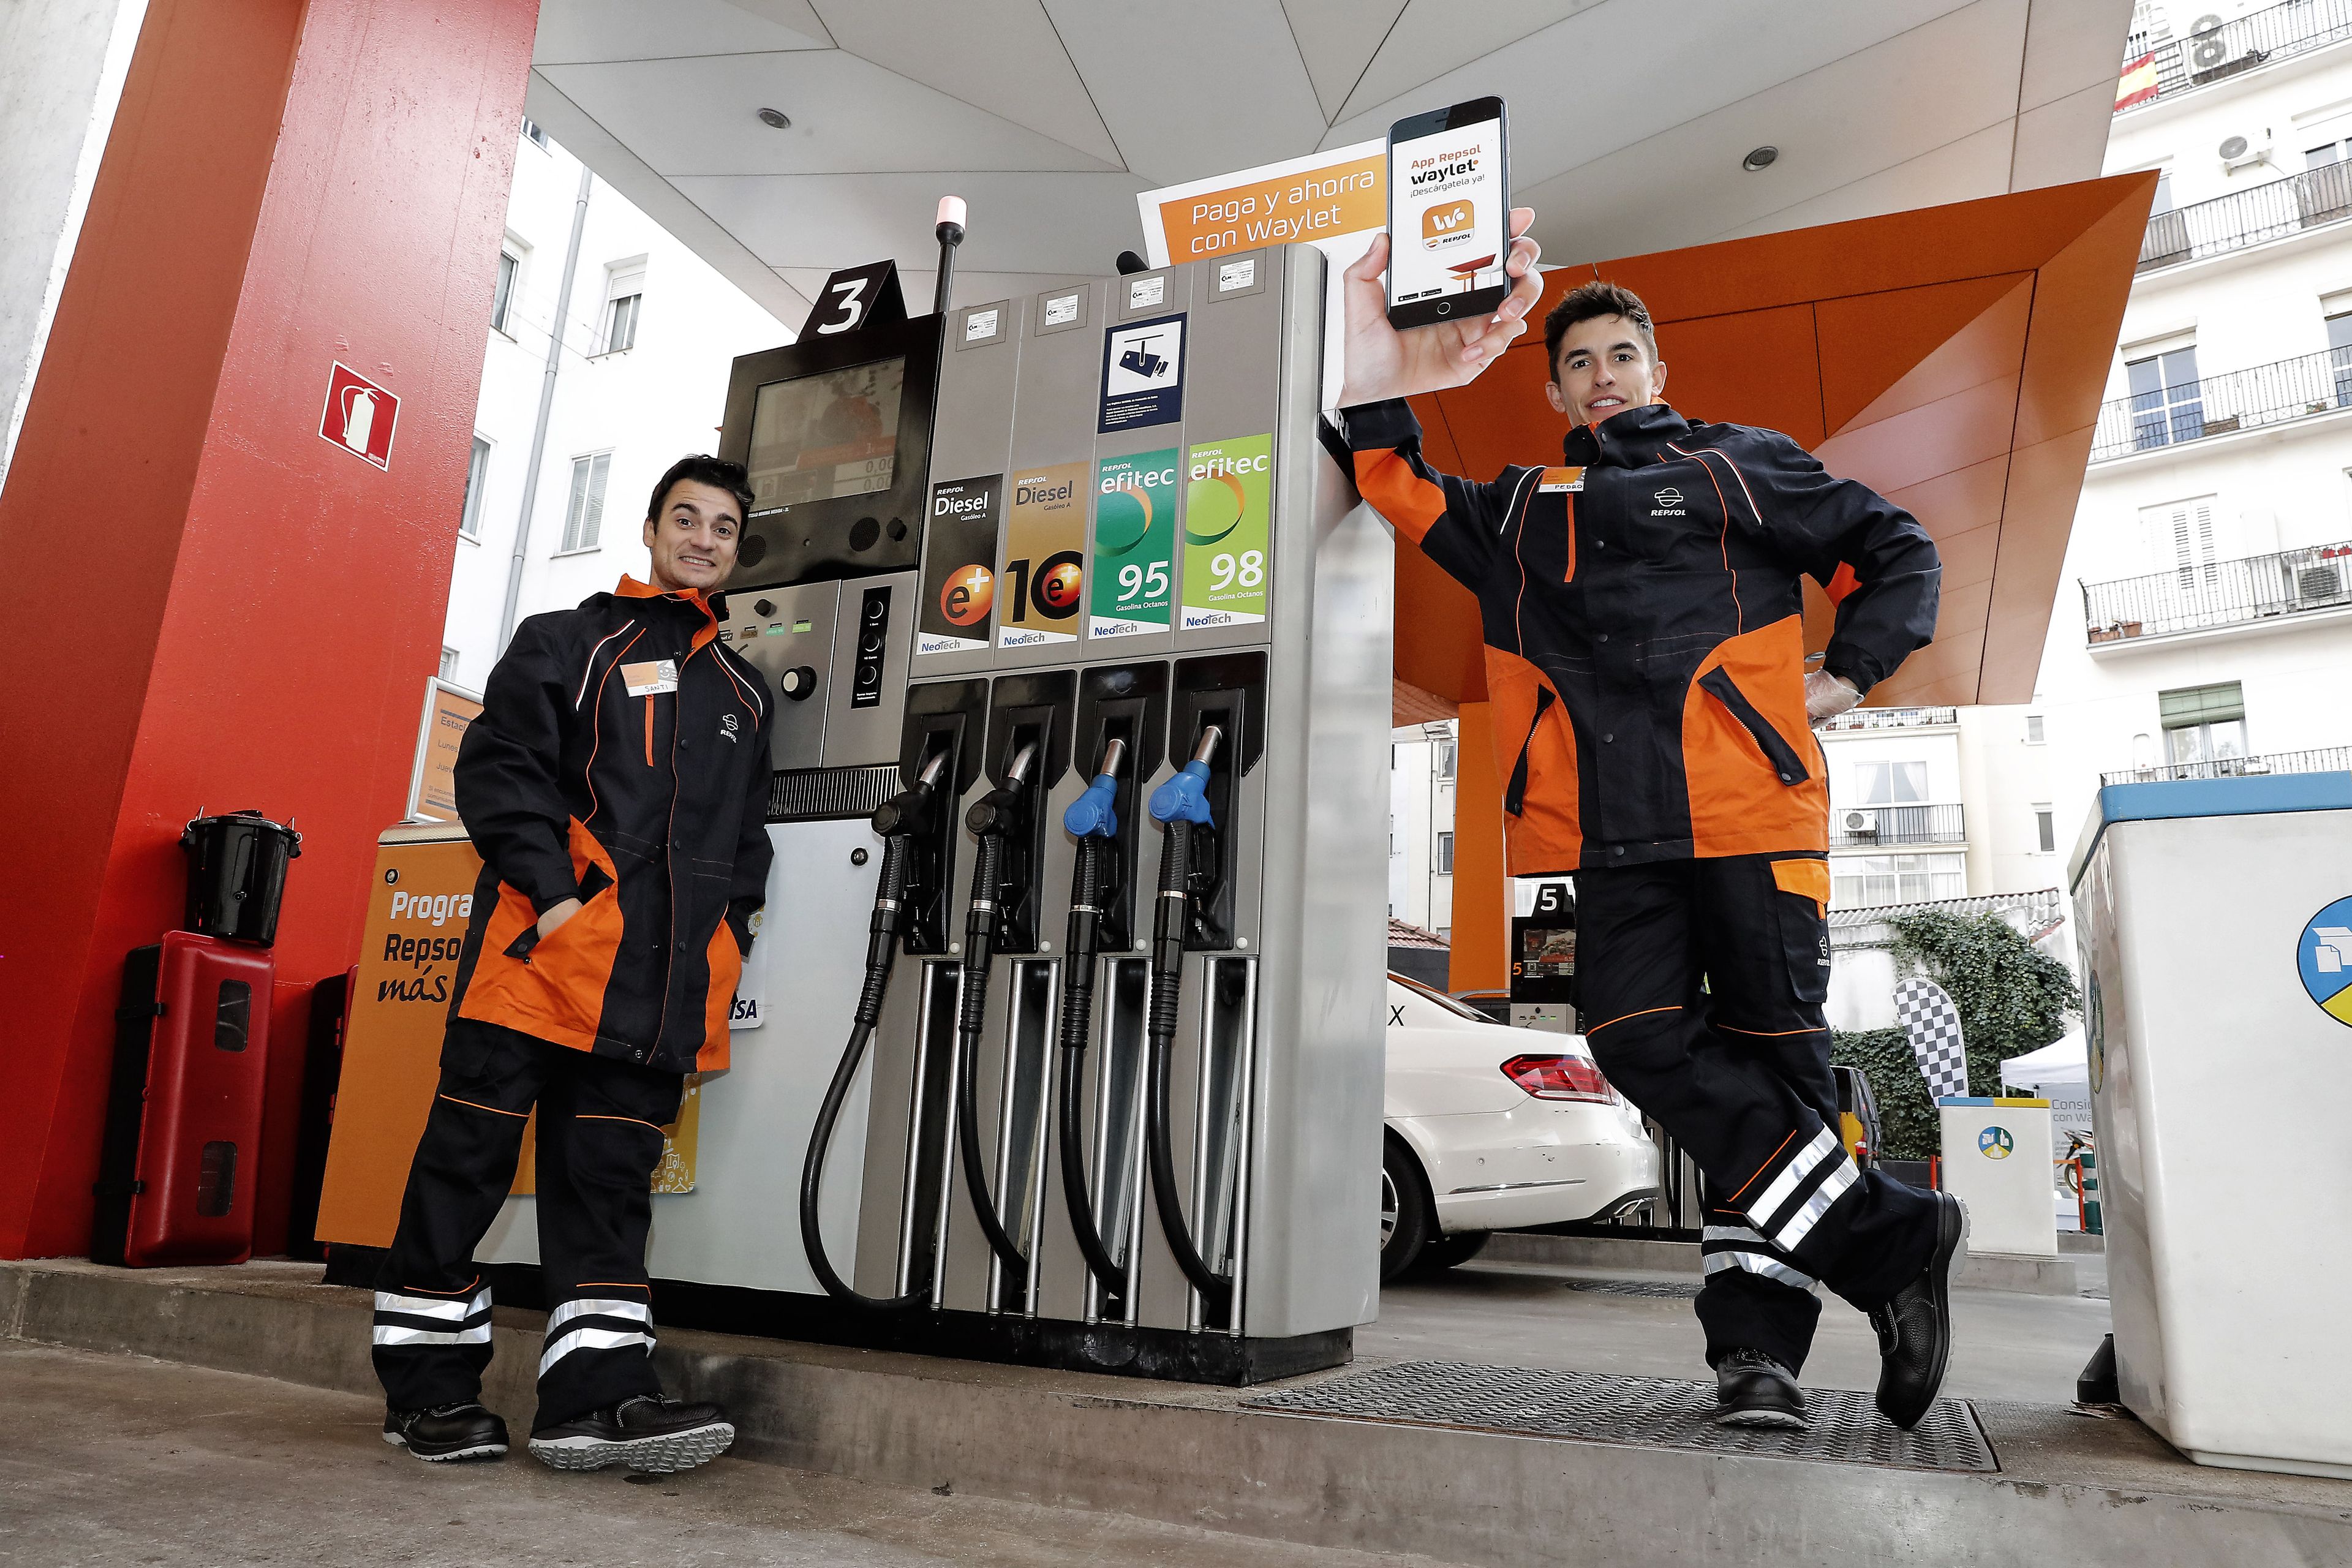 VÍDEO: ¿Lograrán pasar desapercibidos Márquez y Pedrosa en una gasolinera?